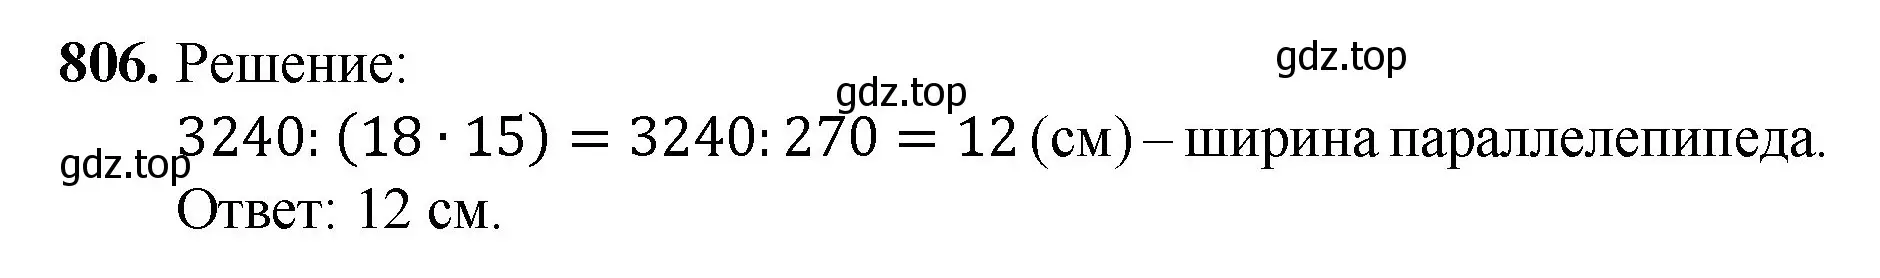 Решение номер 806 (страница 181) гдз по математике 5 класс Мерзляк, Полонский, учебник